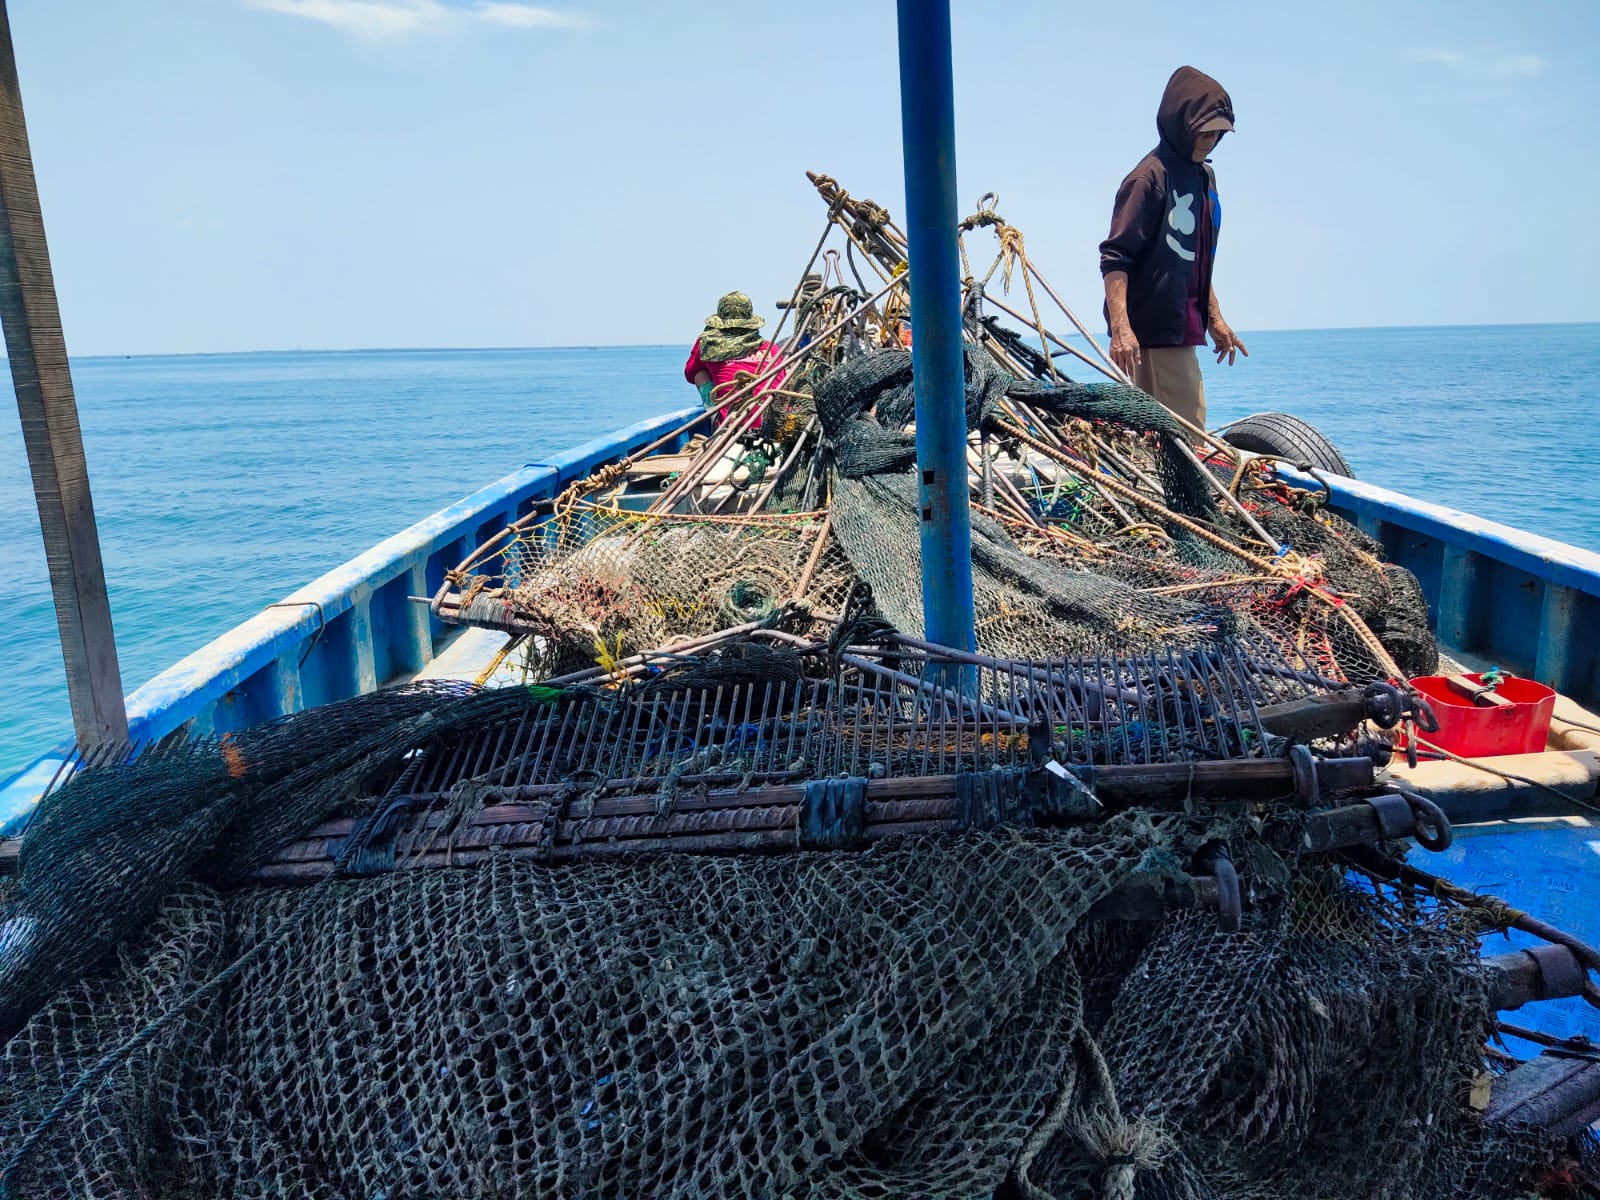 Ditpolairud Polda Jabar Sisir Perairan Blanakan, Amankan Puluhan Alat Tangkap Garok dari Kapal Nelayan 